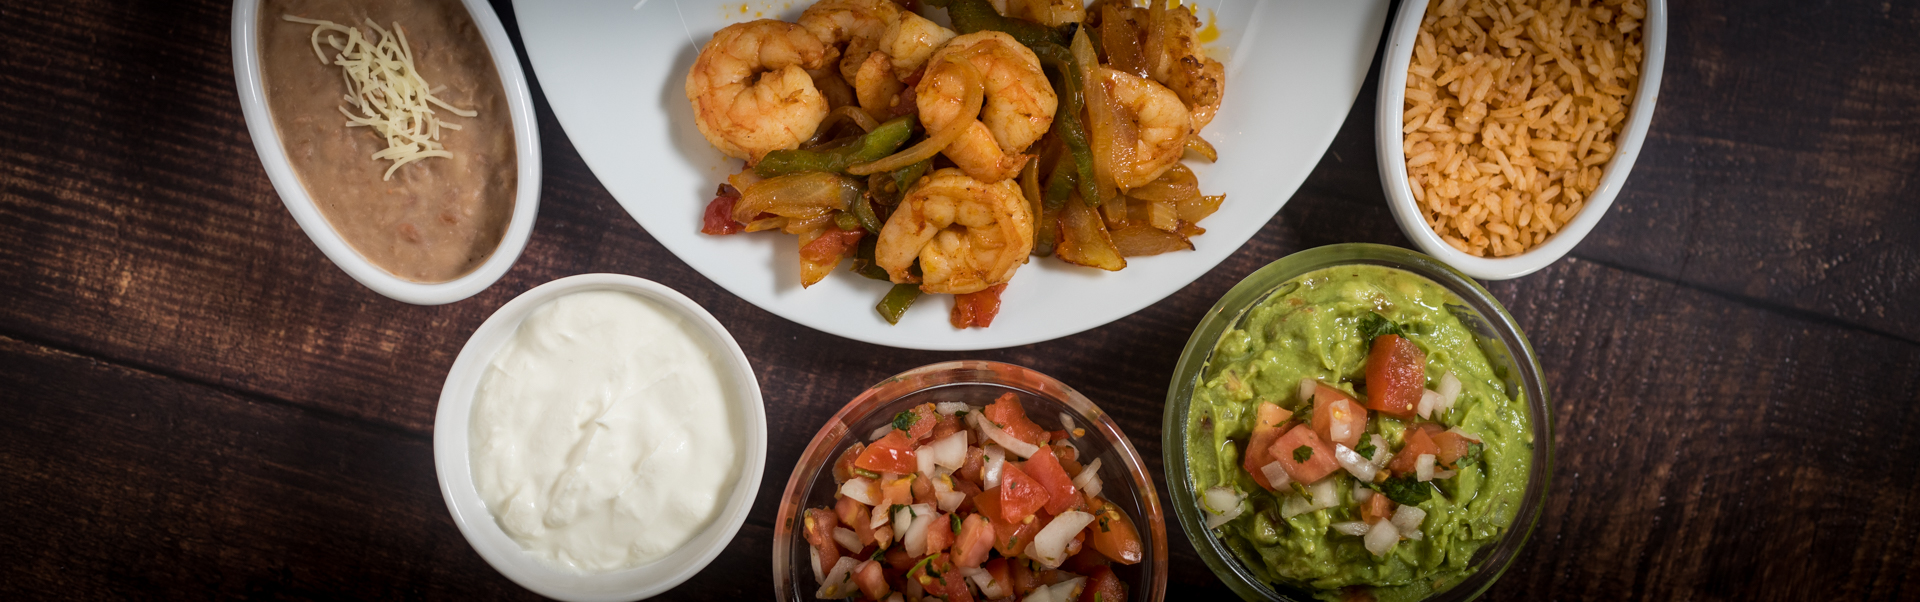 fiesta-fresh-lunch-dinner-shrimp